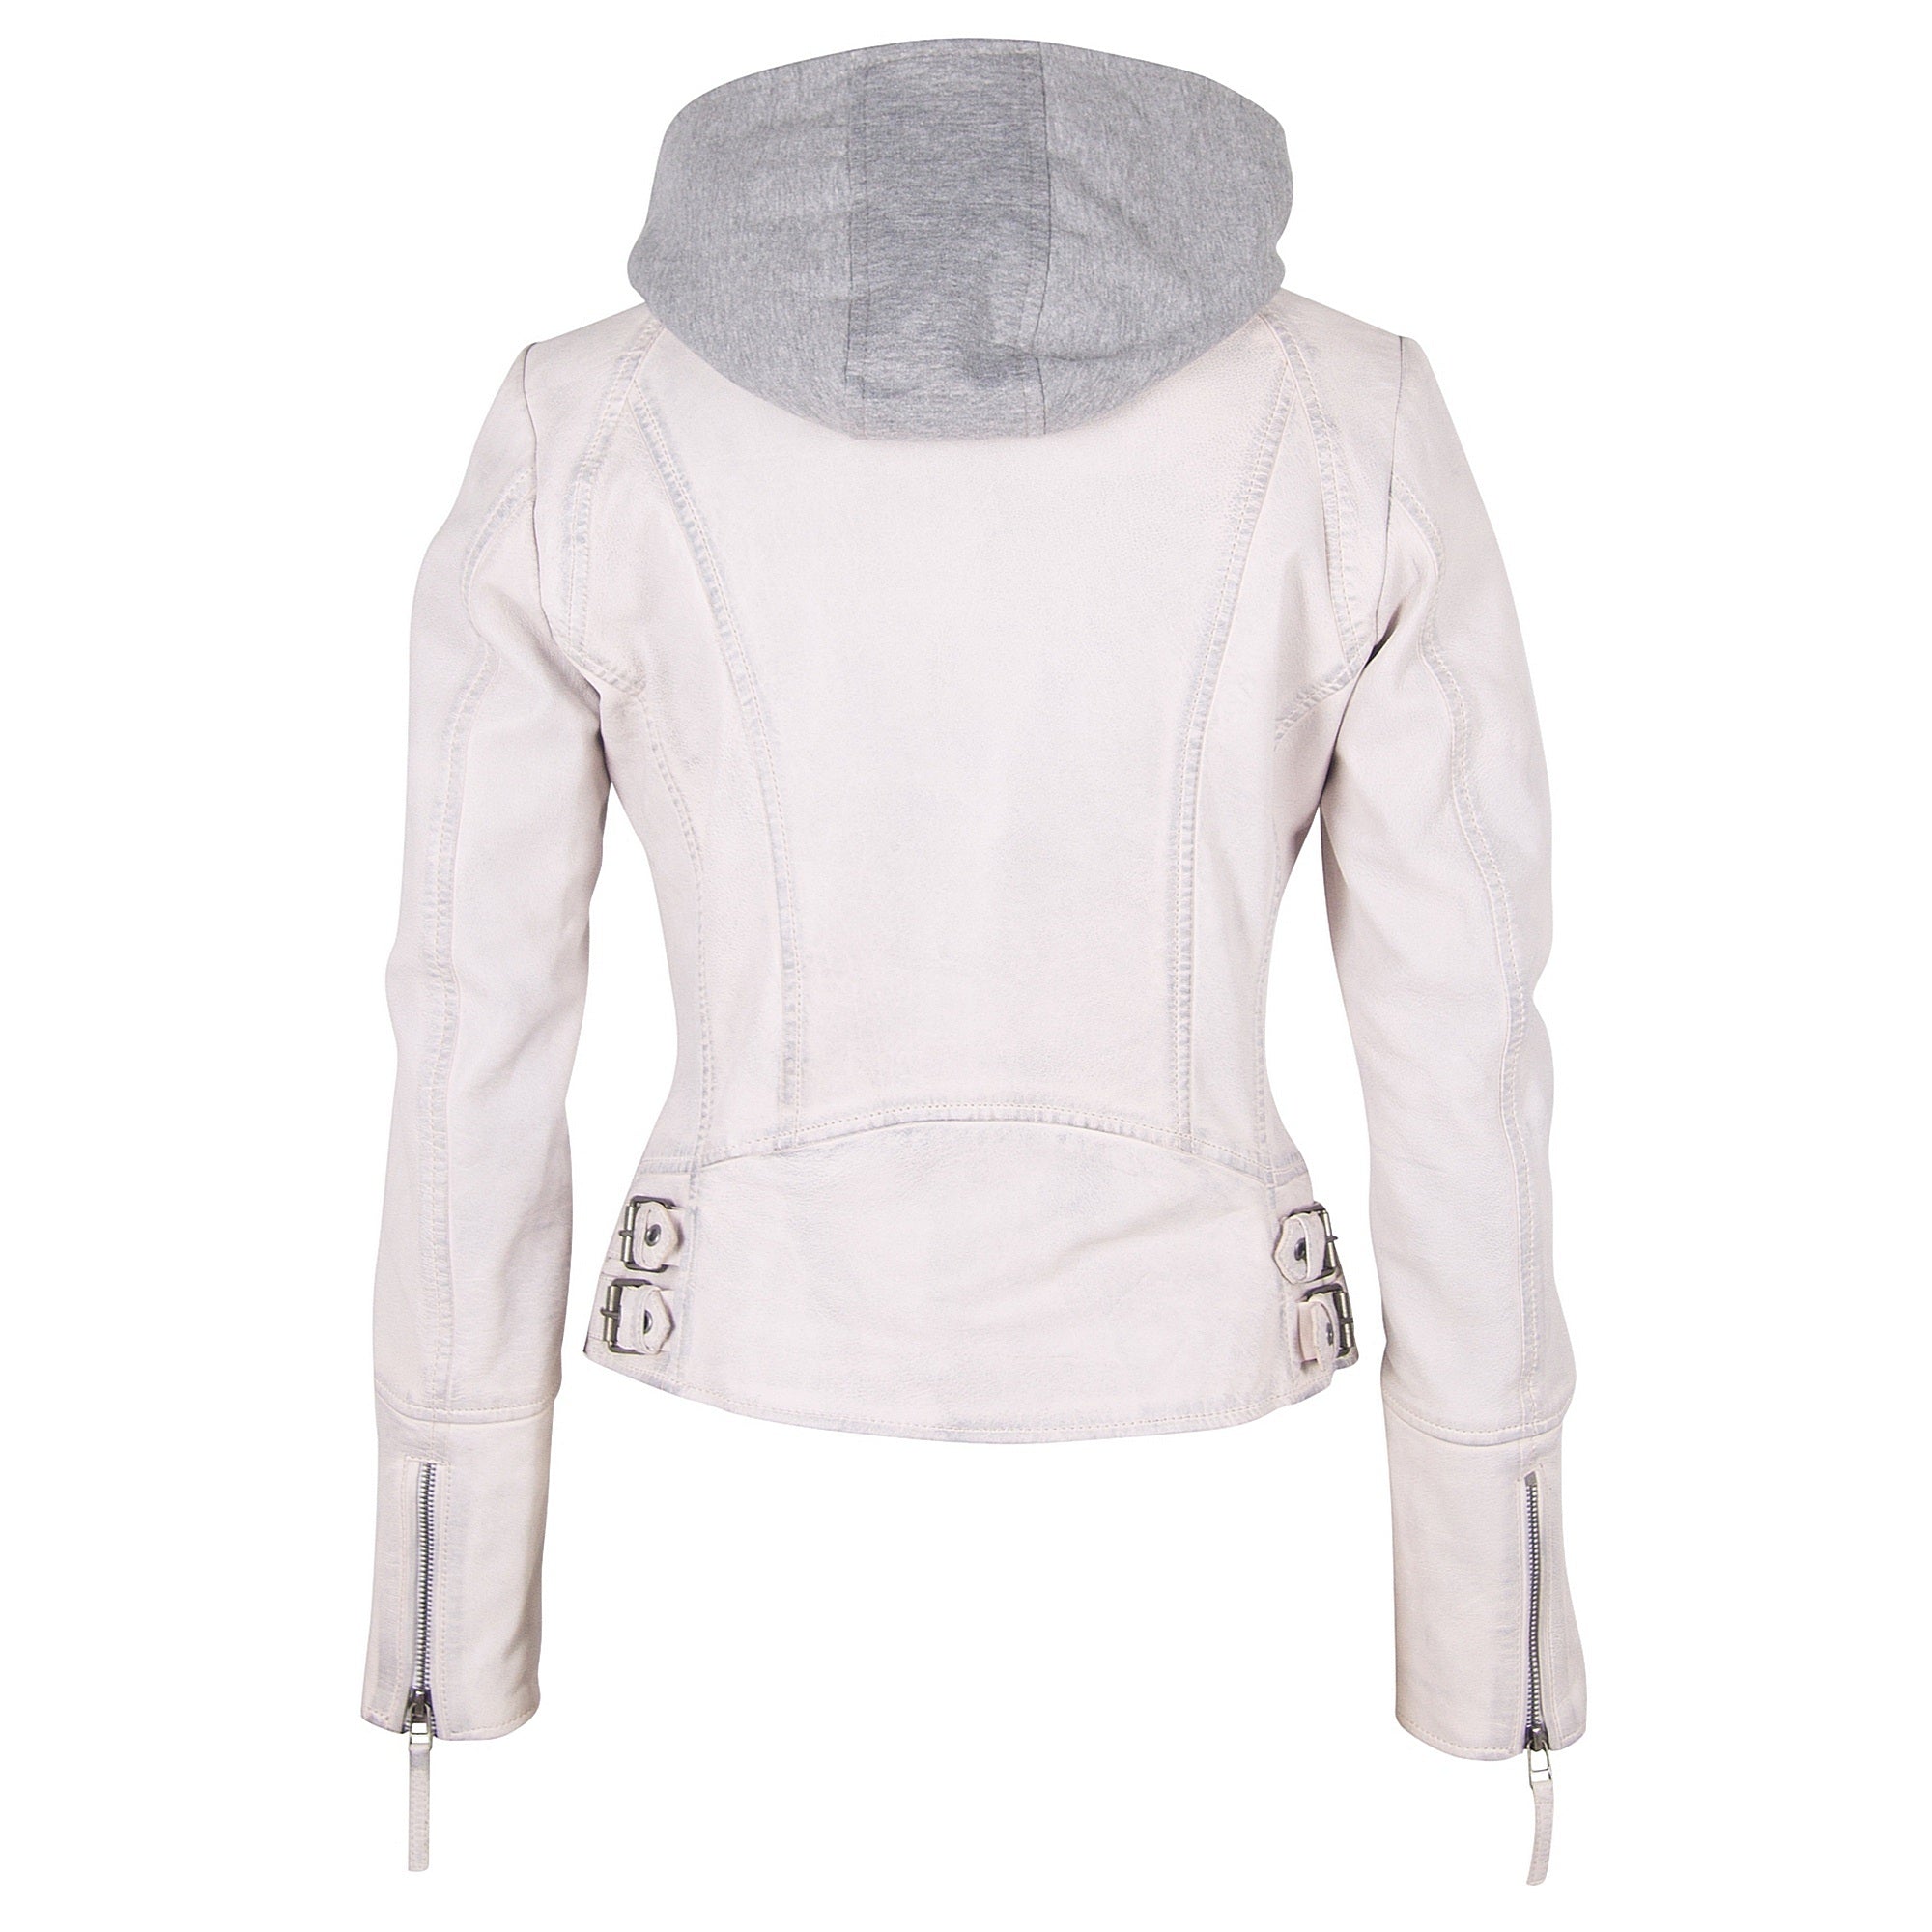 Nola RF Leather Jacket, White – mauritiusleather